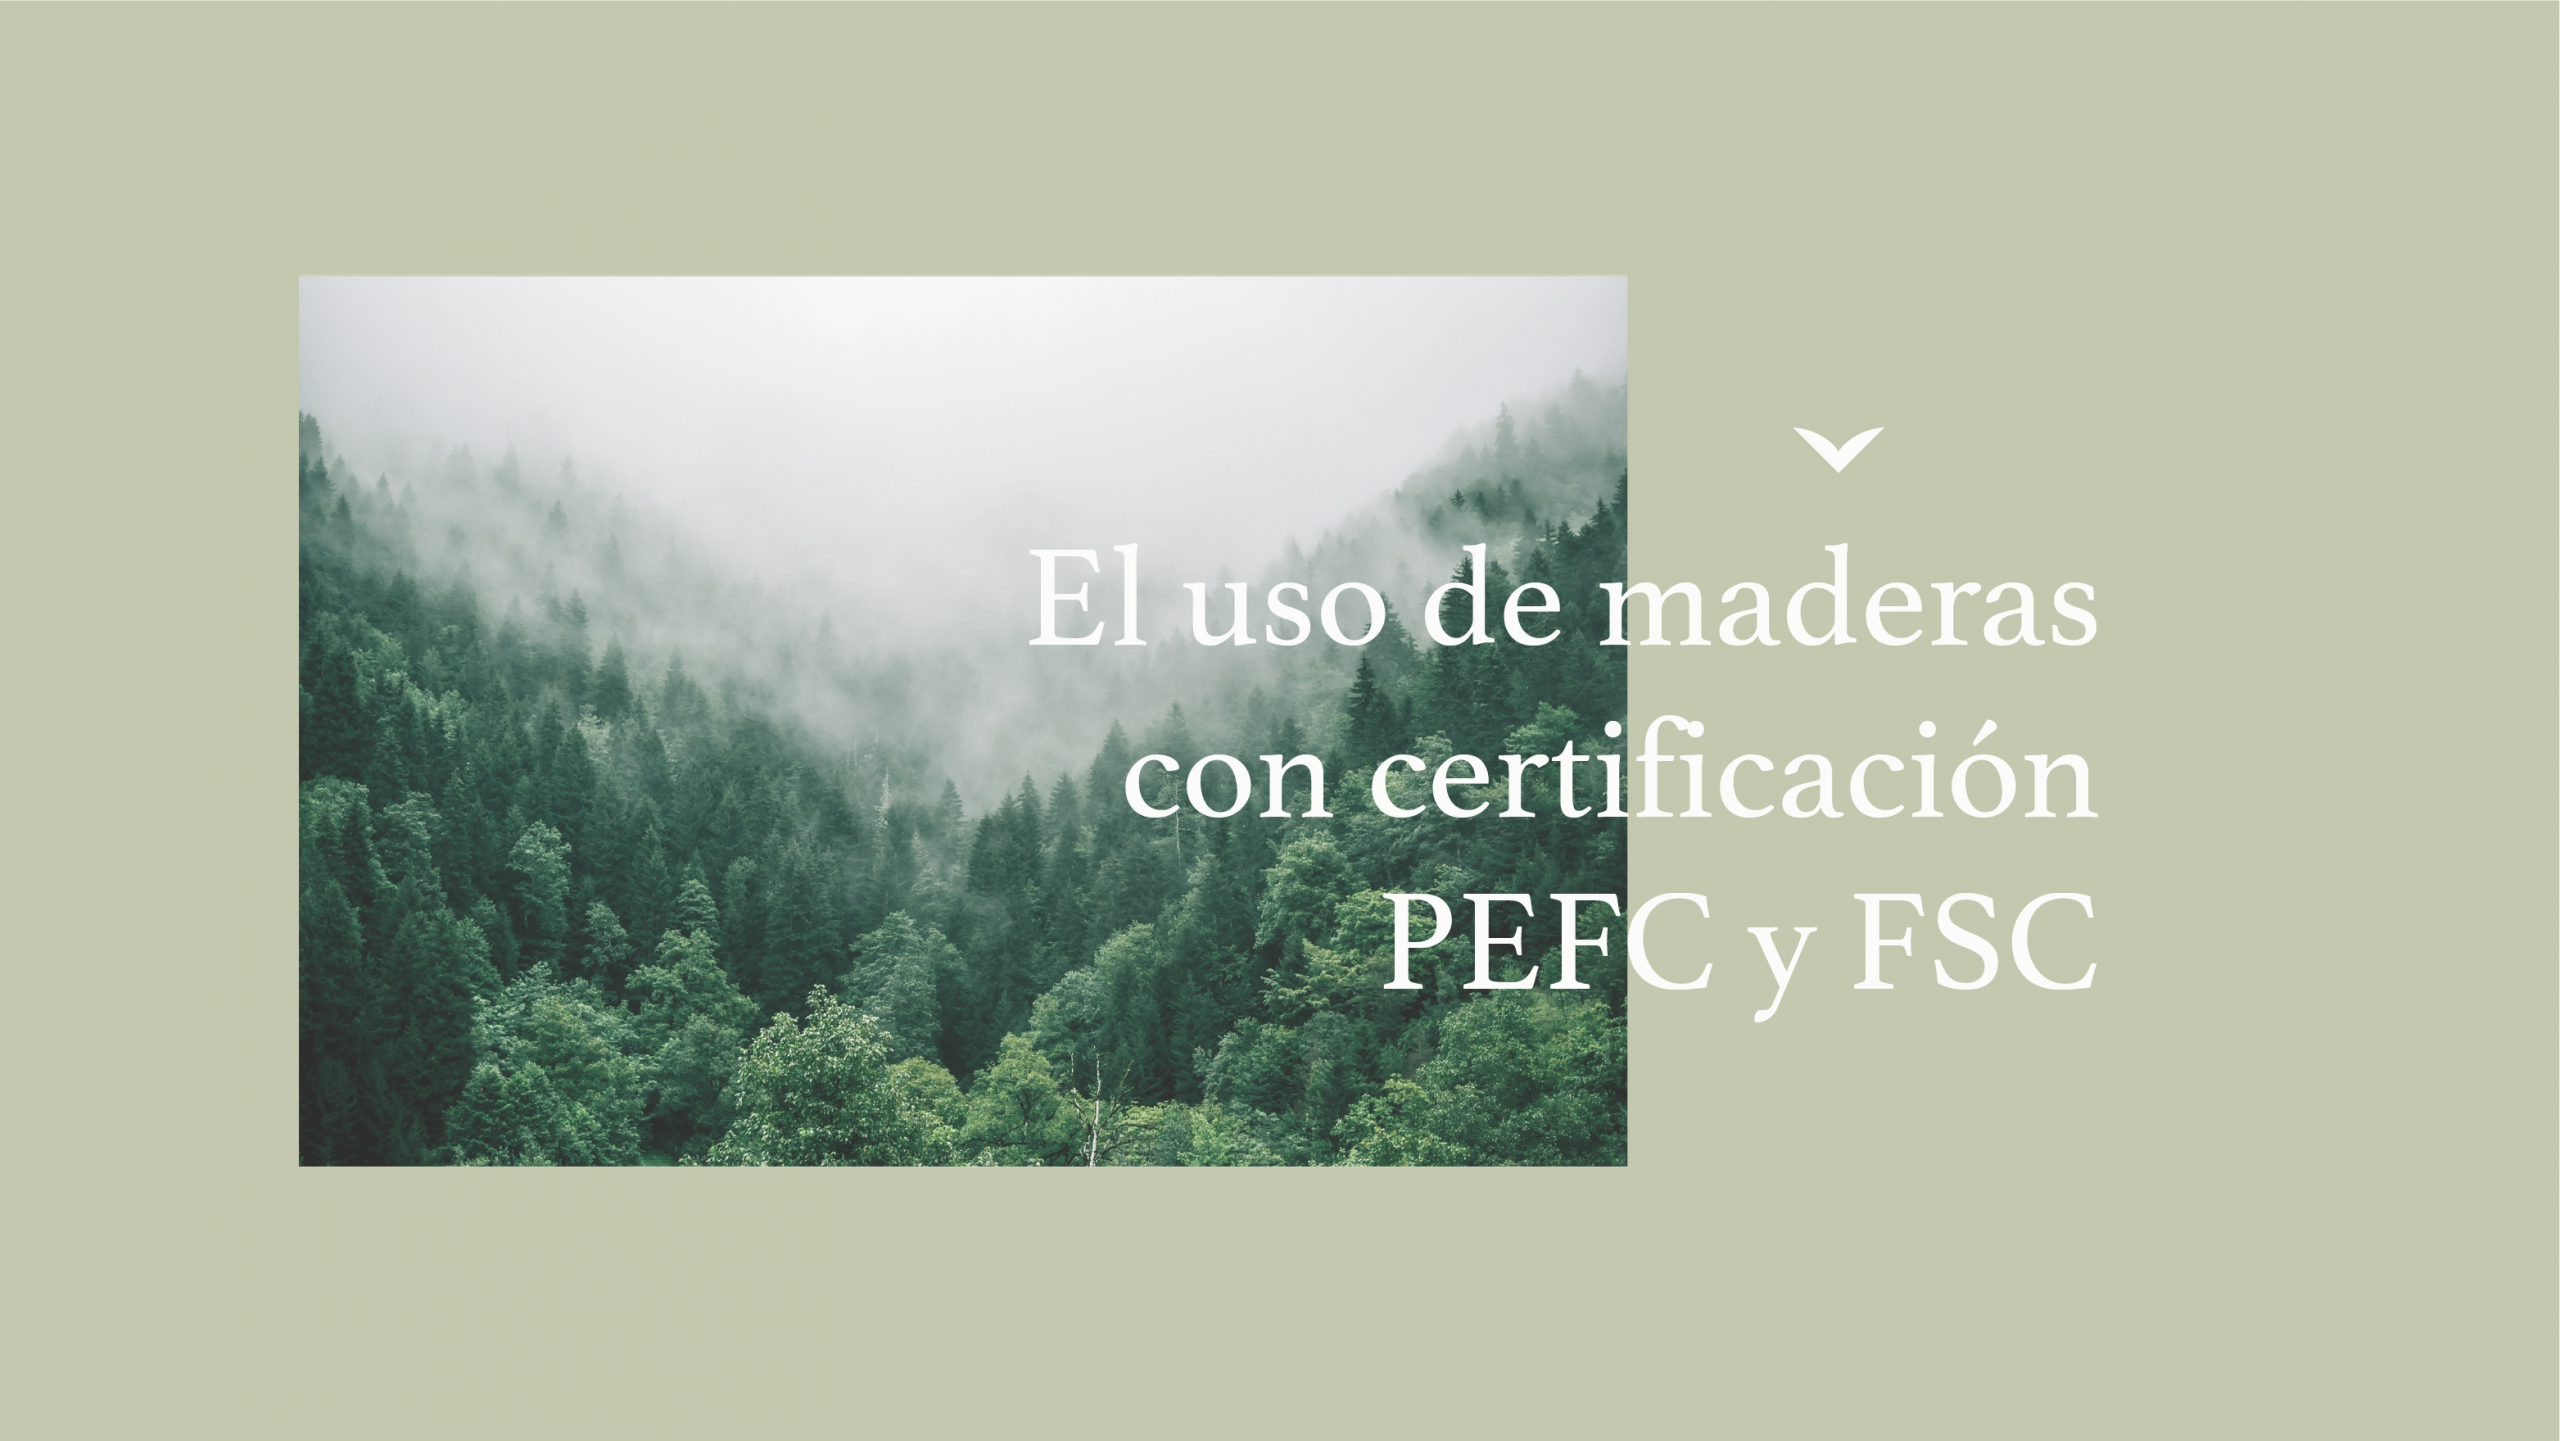 El uso de maderas con certificación PEFC y FSC